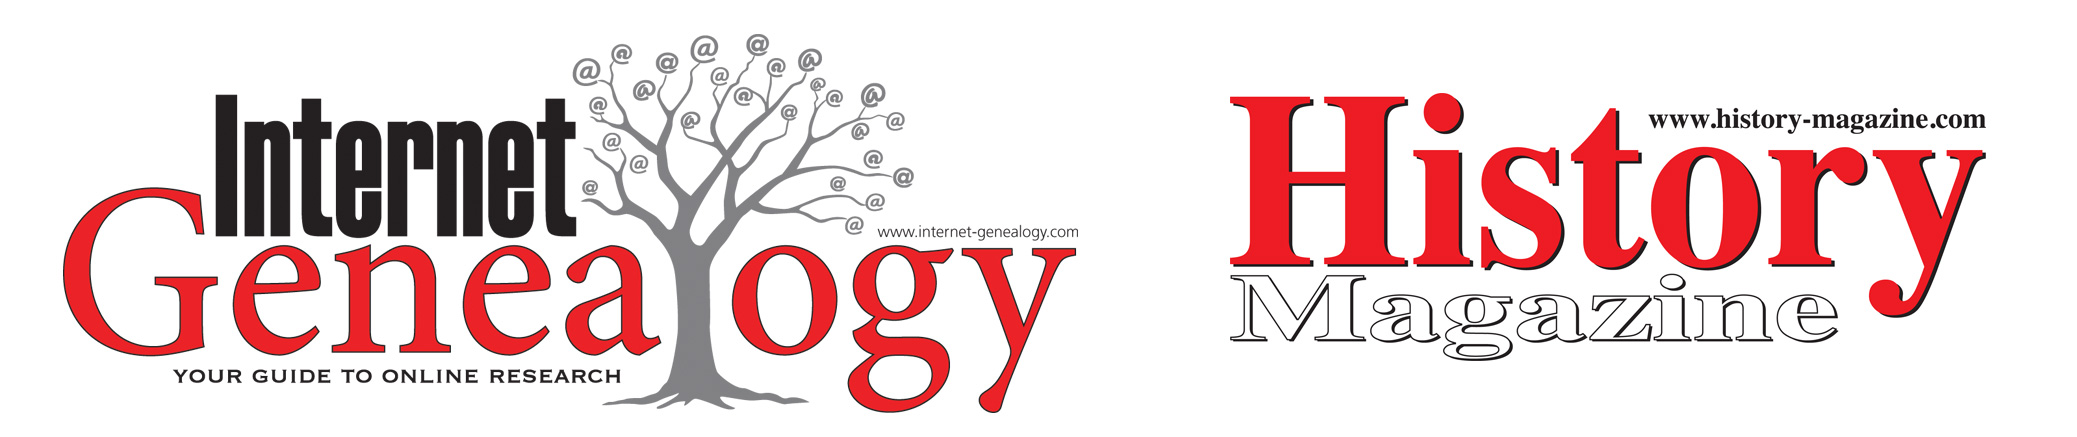 Internet Genealogy and History Magazine